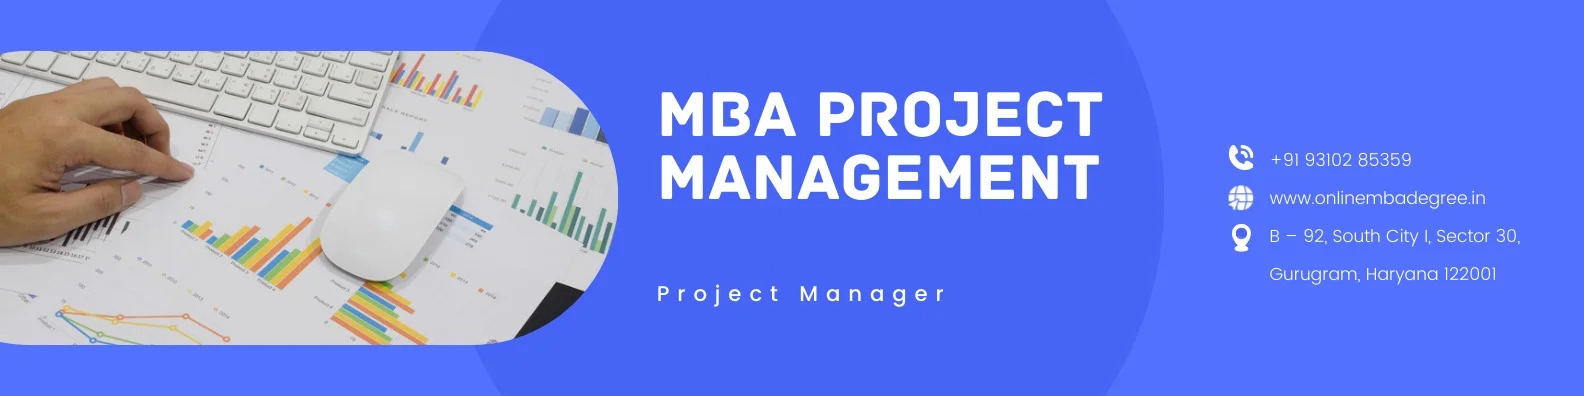 MBA Project Management case Studies